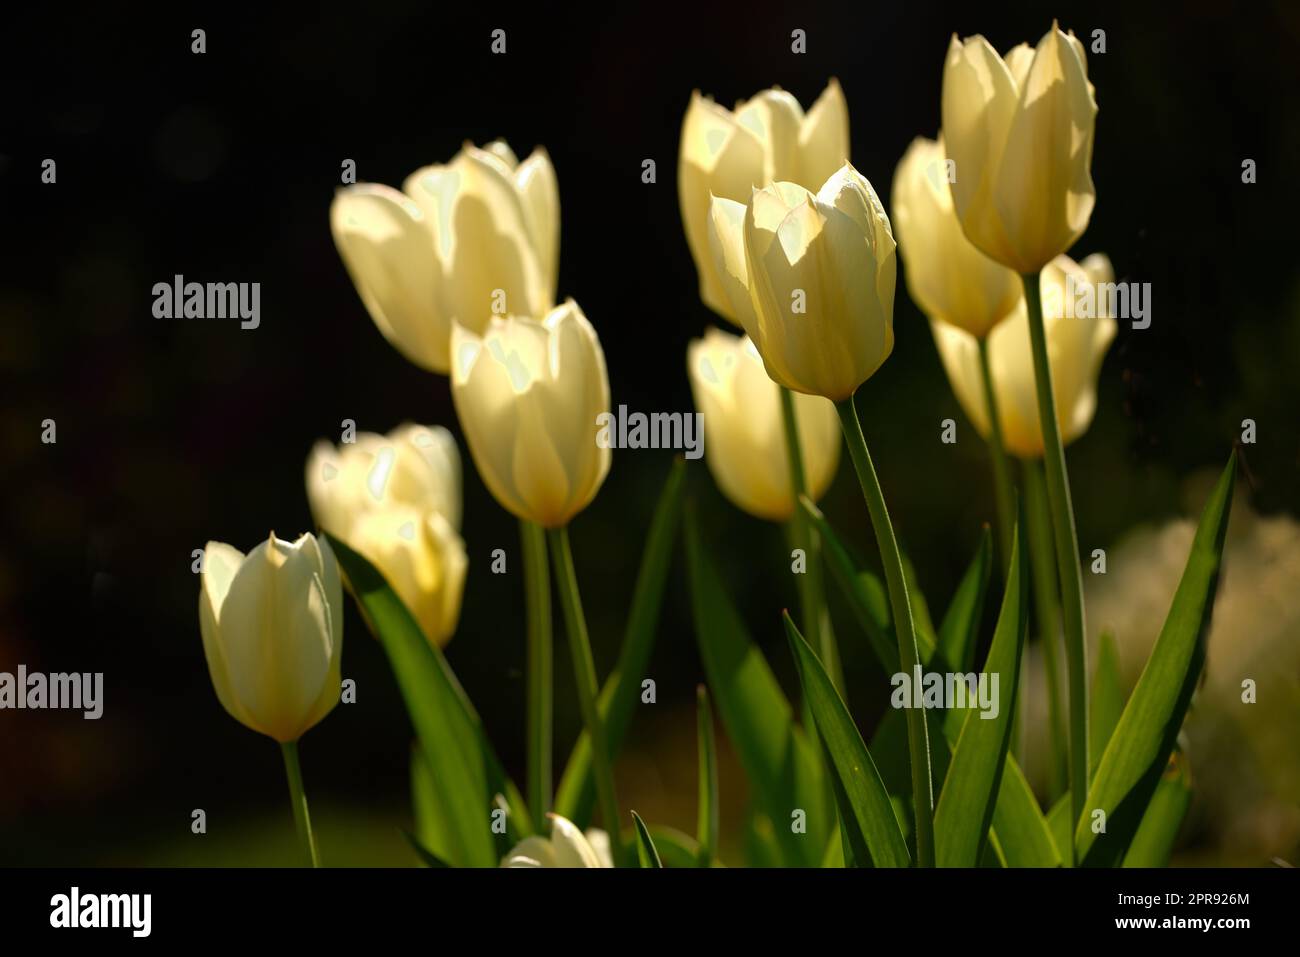 Gelbe Gartenblumen wachsen vor schwarzem Hintergrund. Nahaufnahme von Didiers Tulpen der tulipa gesneriana-Art mit lebendigen Blütenblättern und grünen Stämmen, die an einem Tag im Frühling blühen Stockfoto